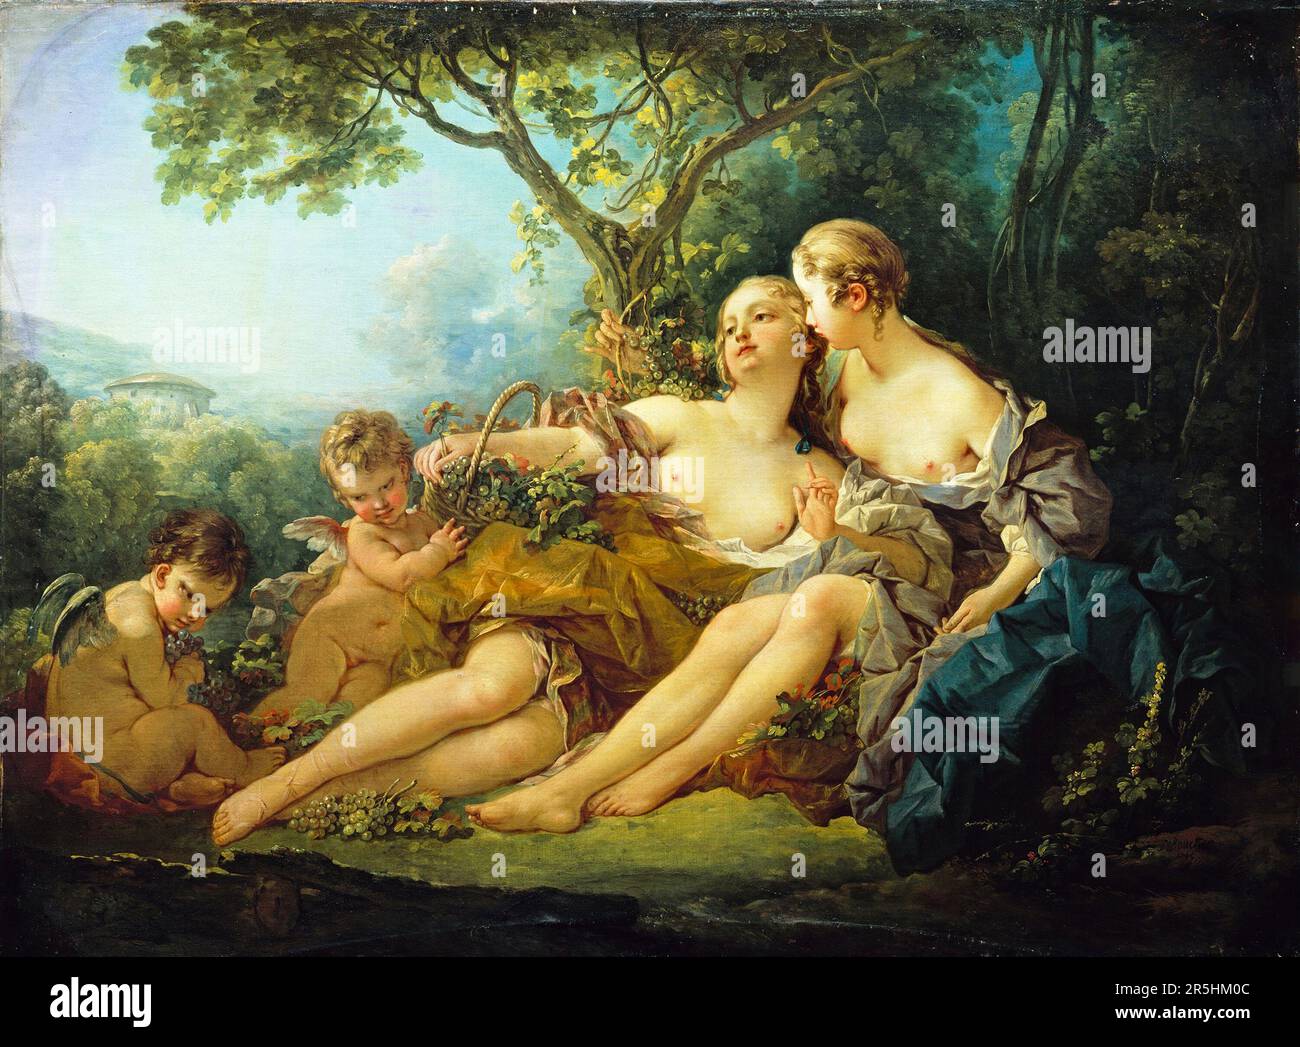 Erigone erobert von Francois Bouchard 1745. Obwohl heute kaum bekannt, war Francois Boucher einer der berühmtesten Maler des 18. Jahrhunderts in Frankreich. Er malte klassische Themen im Barock- und Rokoko-Stil. Seine Schirmherrin war Madame de Pompadour, und sein Werk war so beliebt, dass er schließlich Premier Peintre du ROI (erster Maler des Königs) wurde, ein angesehener Gerichtsstand im Antiker-Regime. Stockfoto